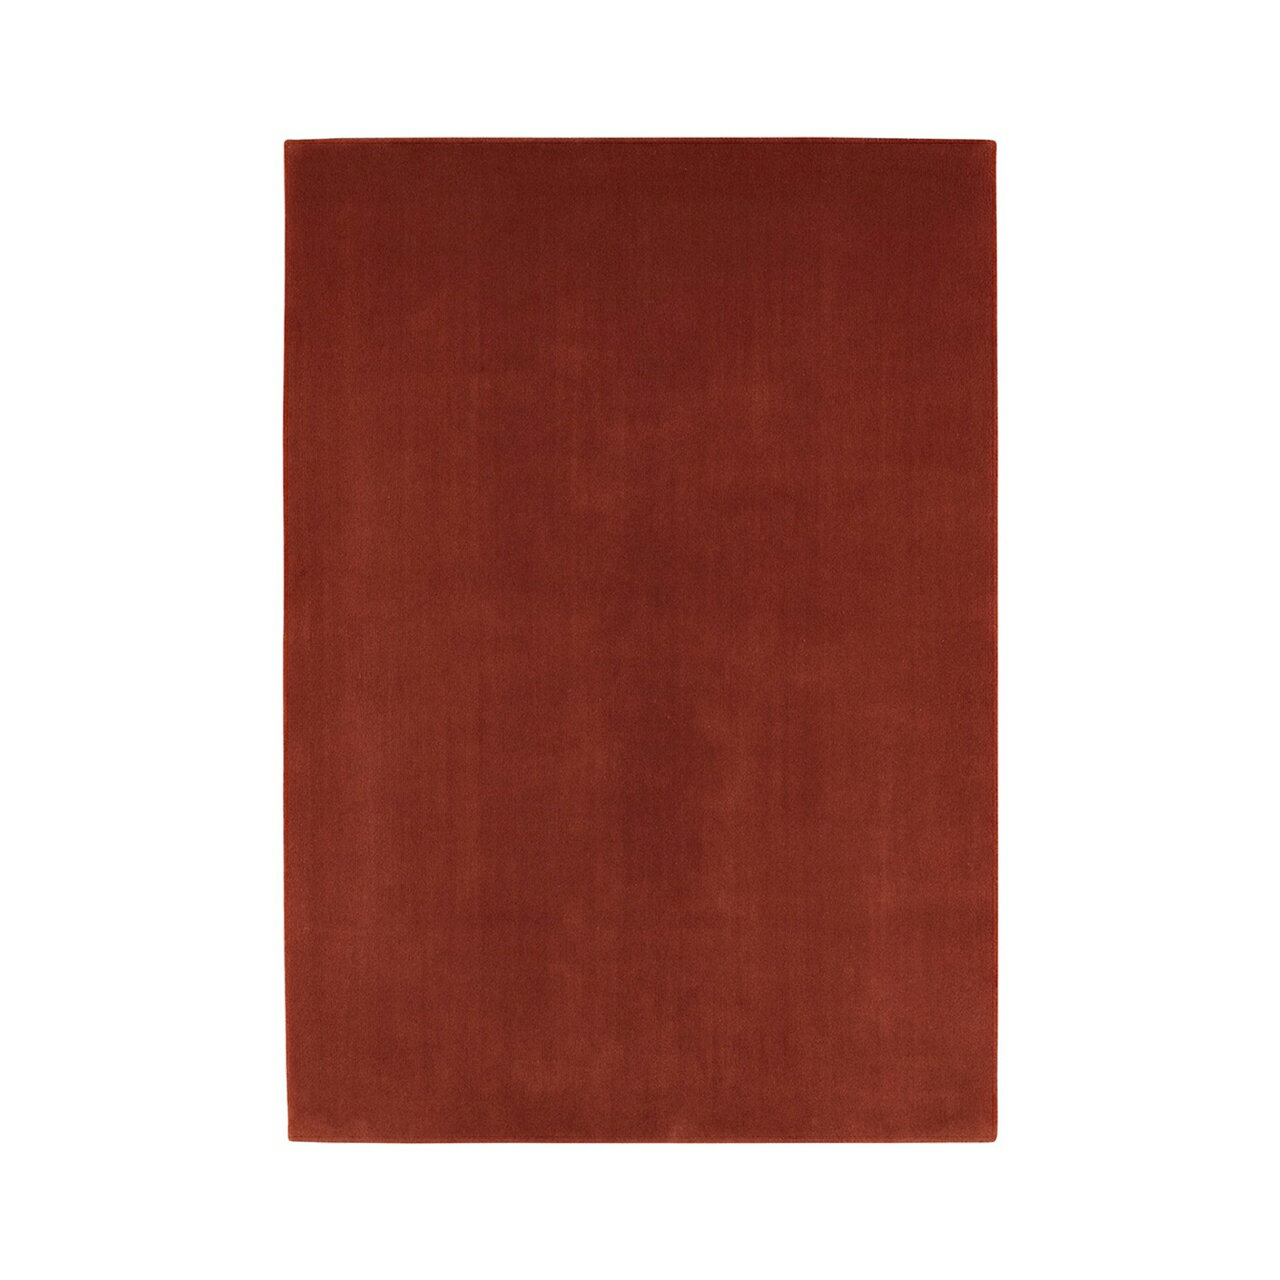 [山形緞通 プレミアム無地]『MANYO』KURI [選べるS/Mサイズ] オリエンタルカーペット 絨毯 じゅうたん 高級 高品質 インテリア ラグ マット 敷物 F21A-158var